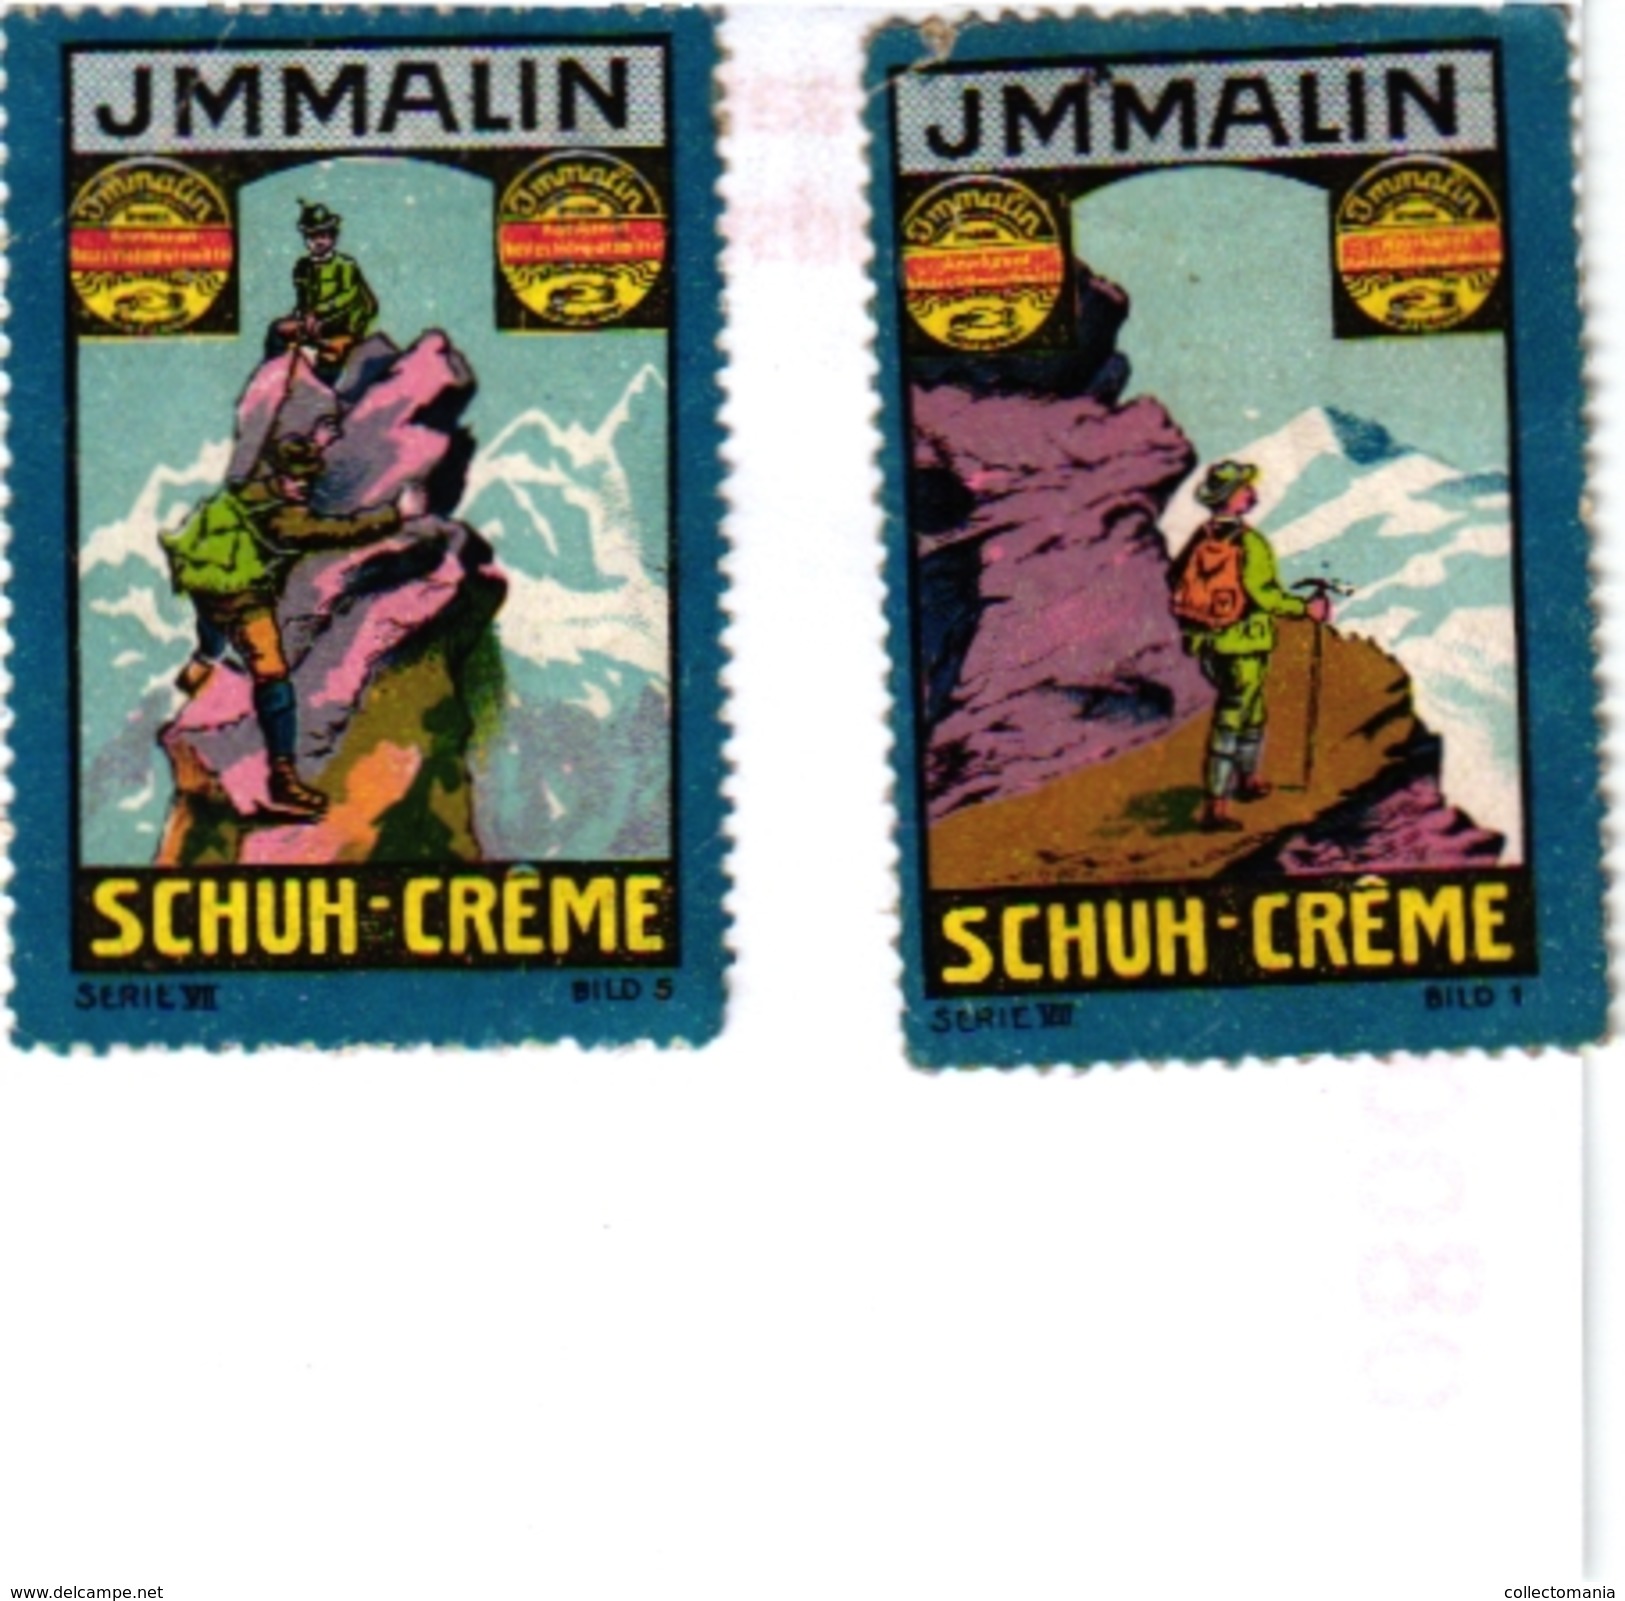 8 Poster Stamp Cinderella Reklame Marke Pub  ALPINISME Mountaineering Skiing Montagne =gebirgte Berg Climbing Klimmen VG - Sports D'hiver